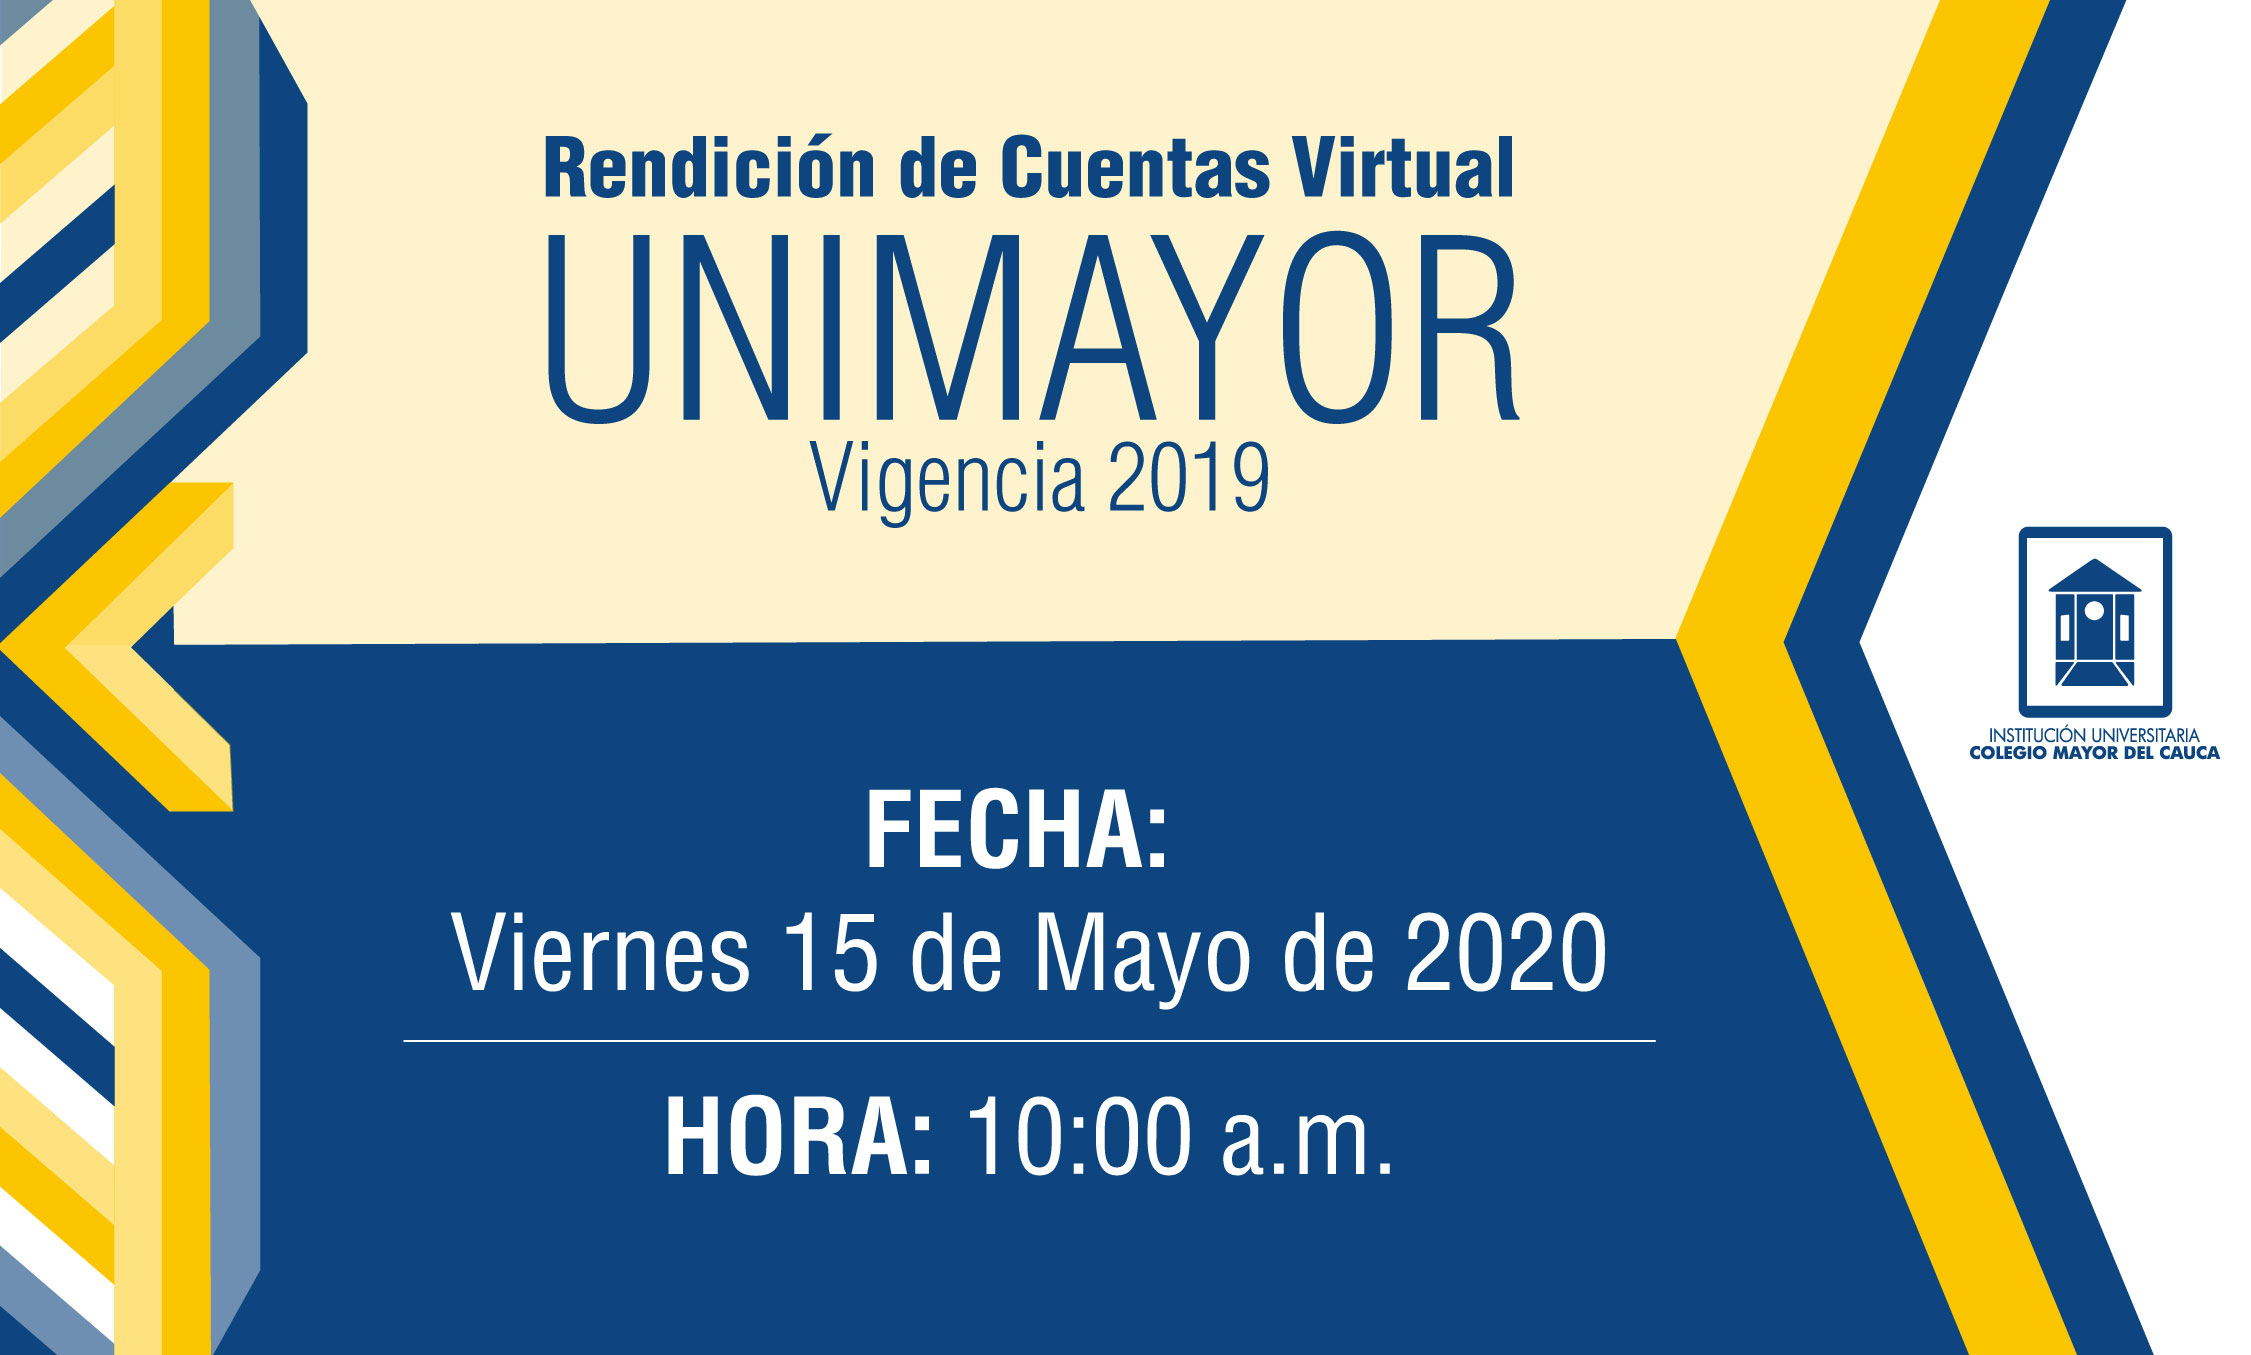 UNIMAYOR Realizará Virtualmente su Rendición de Cuentas Vigencia 2019.